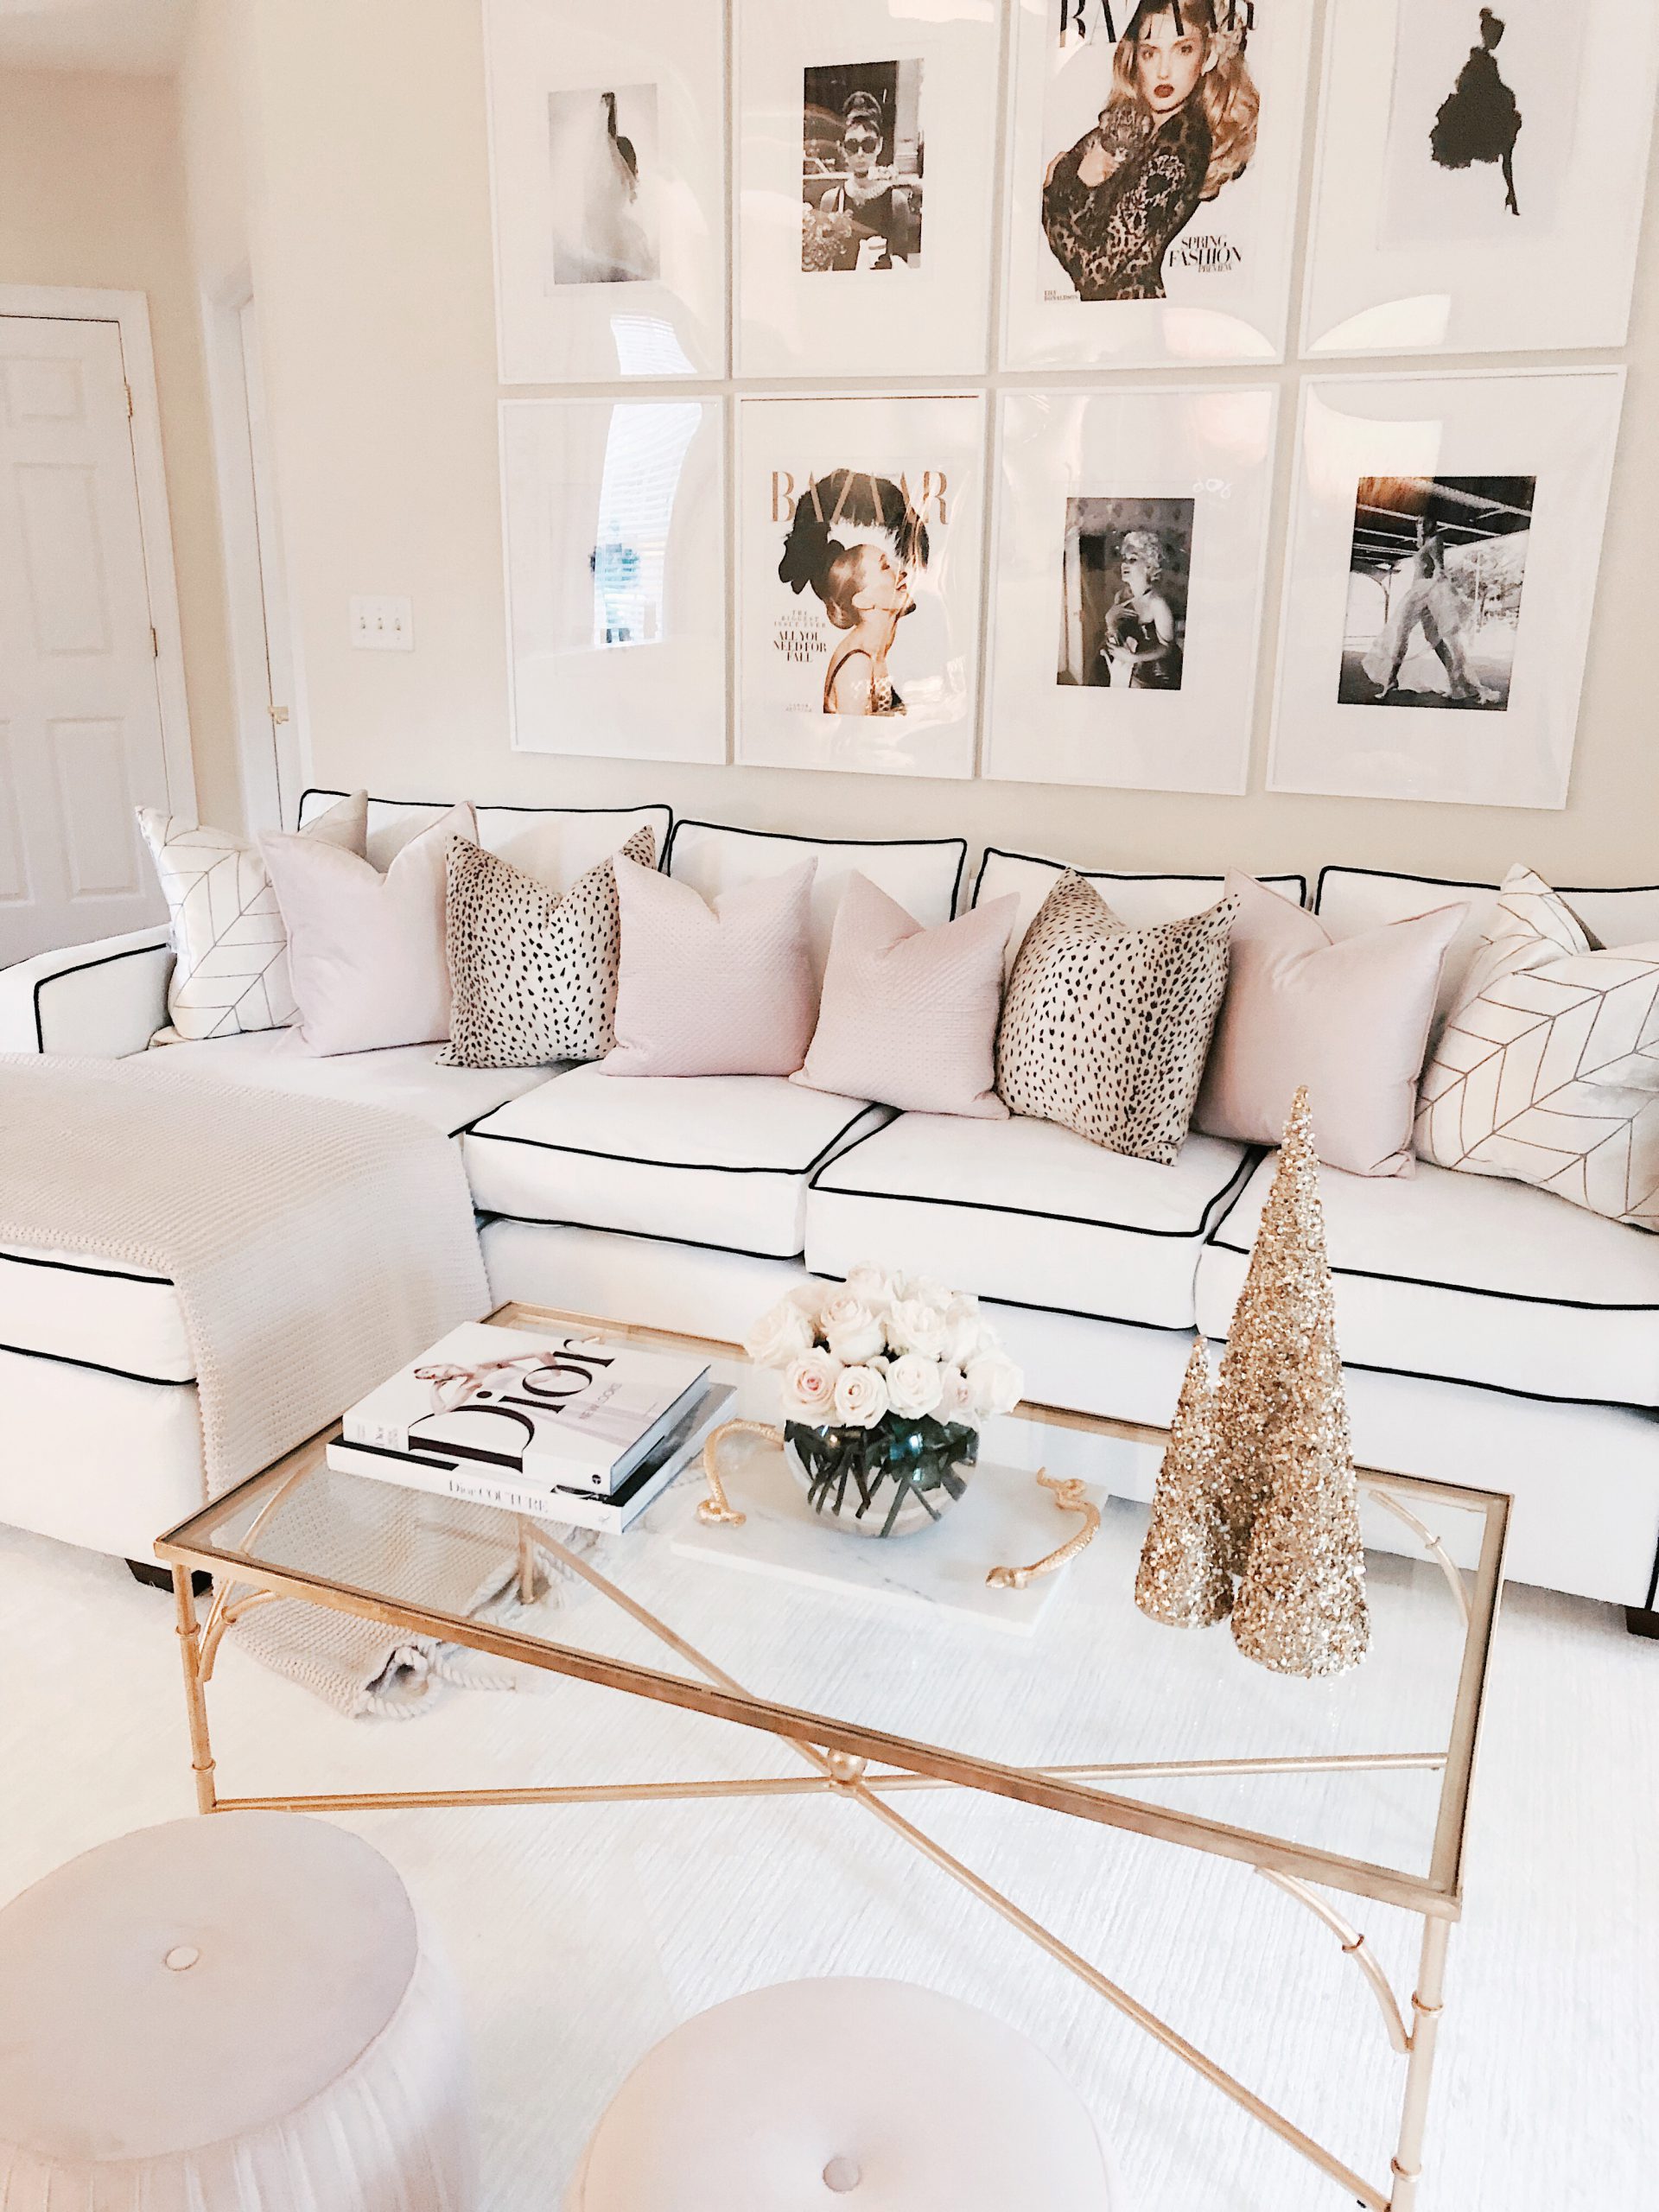 Chanel & Glam Inspired living room makeover